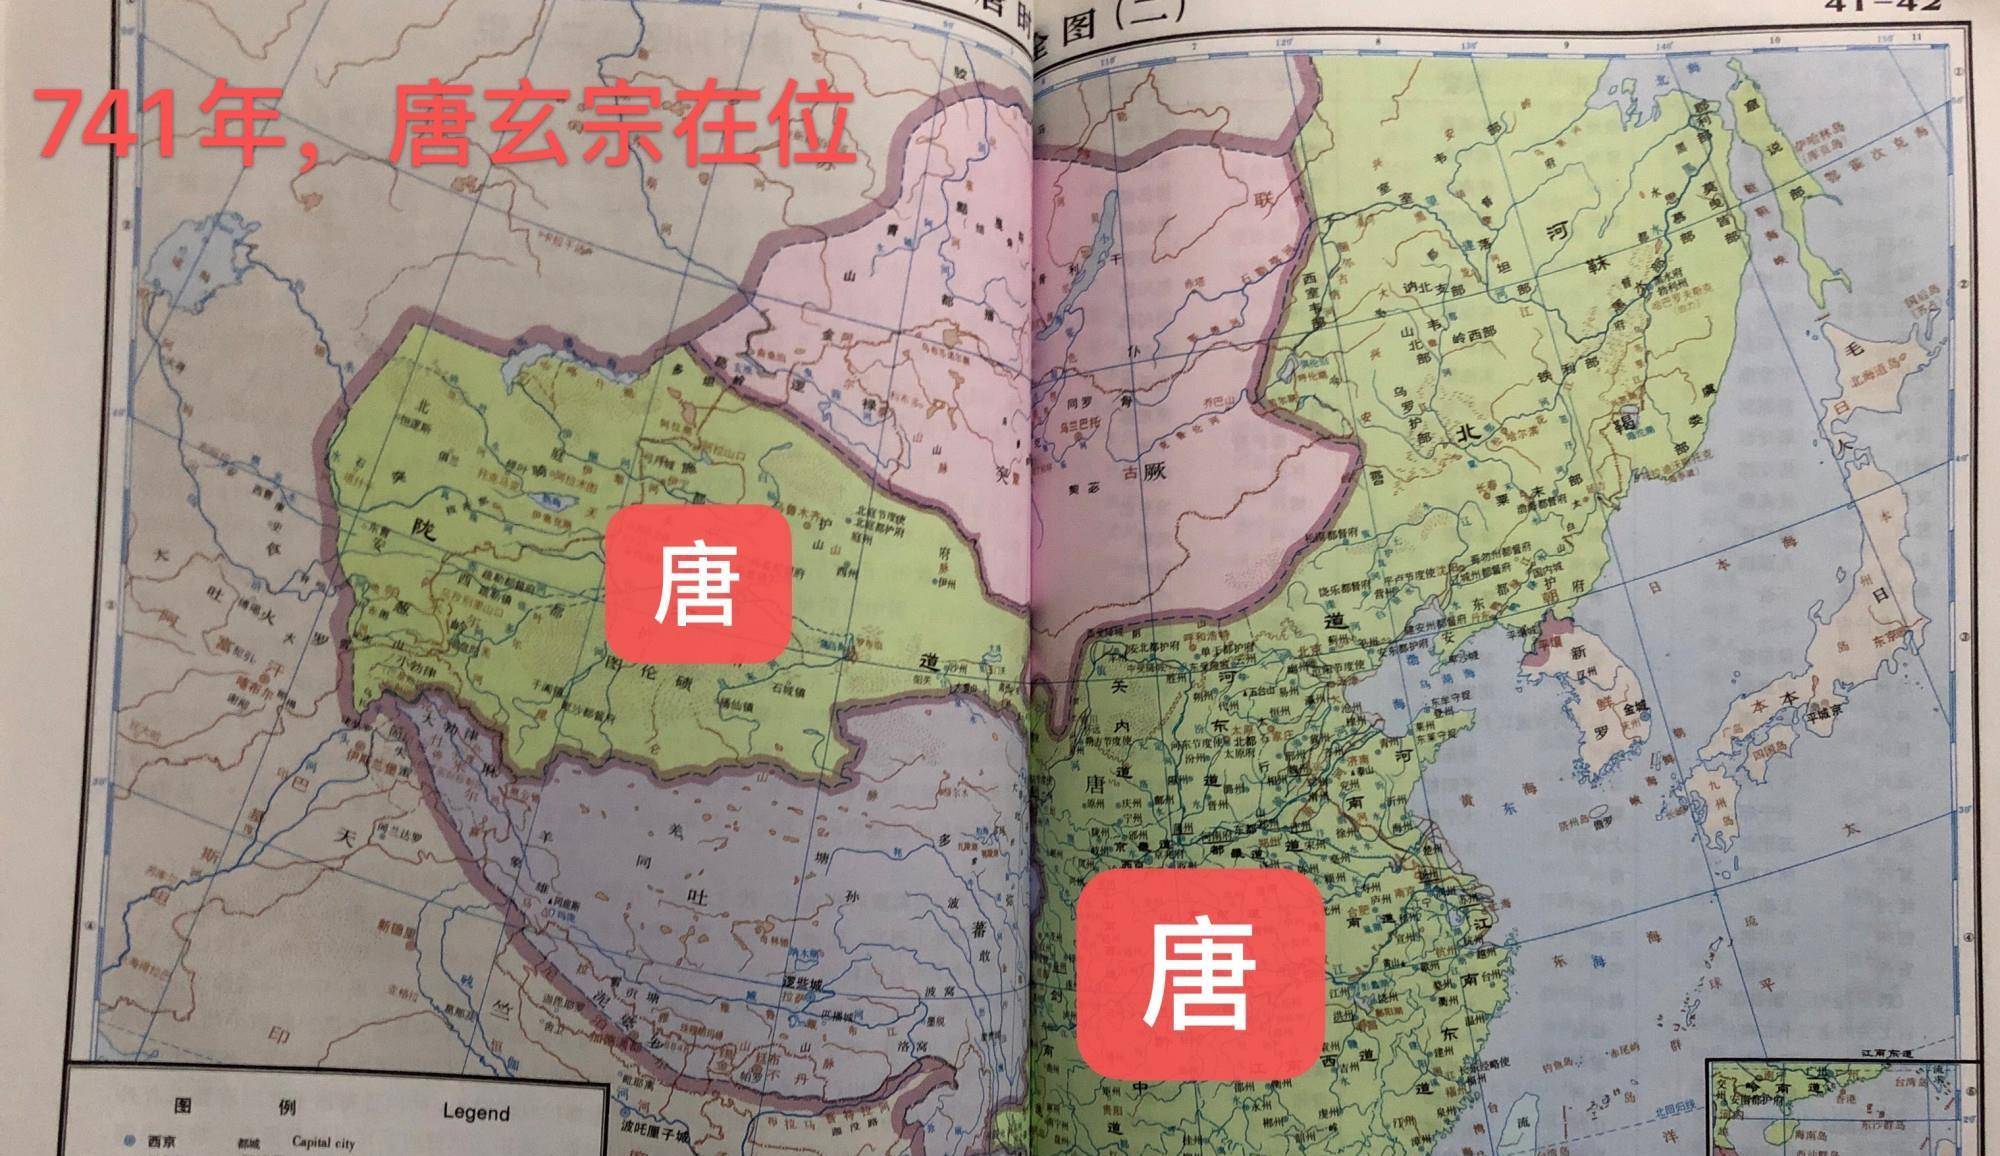 原创三张唐朝不同时期的地图越看越心酸安史之乱带来的影响太大